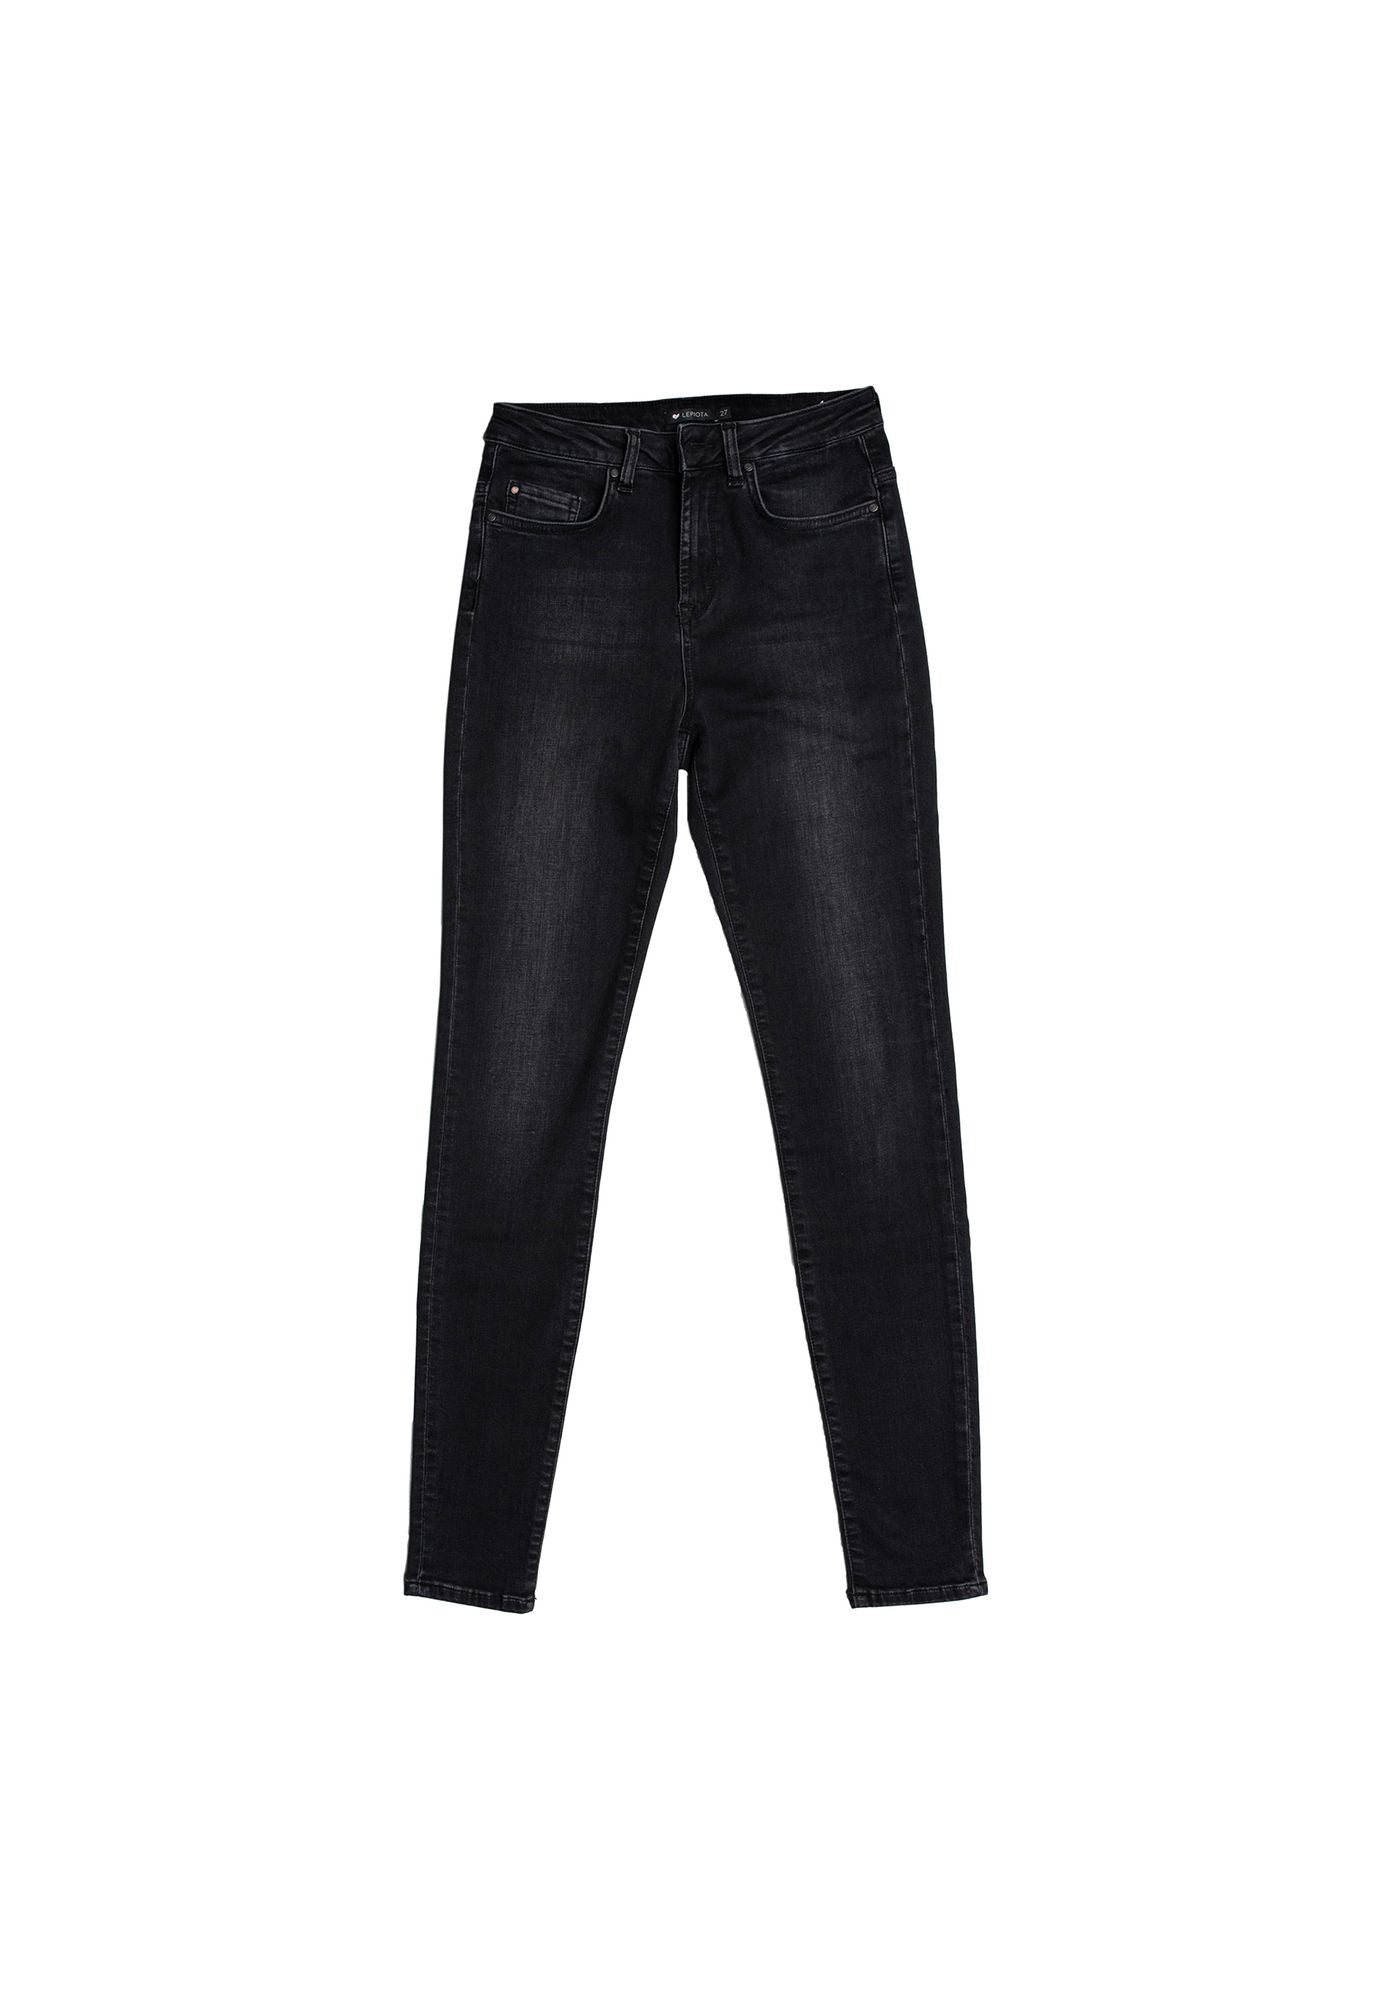 Skinny Jeans Lepiota Used Black